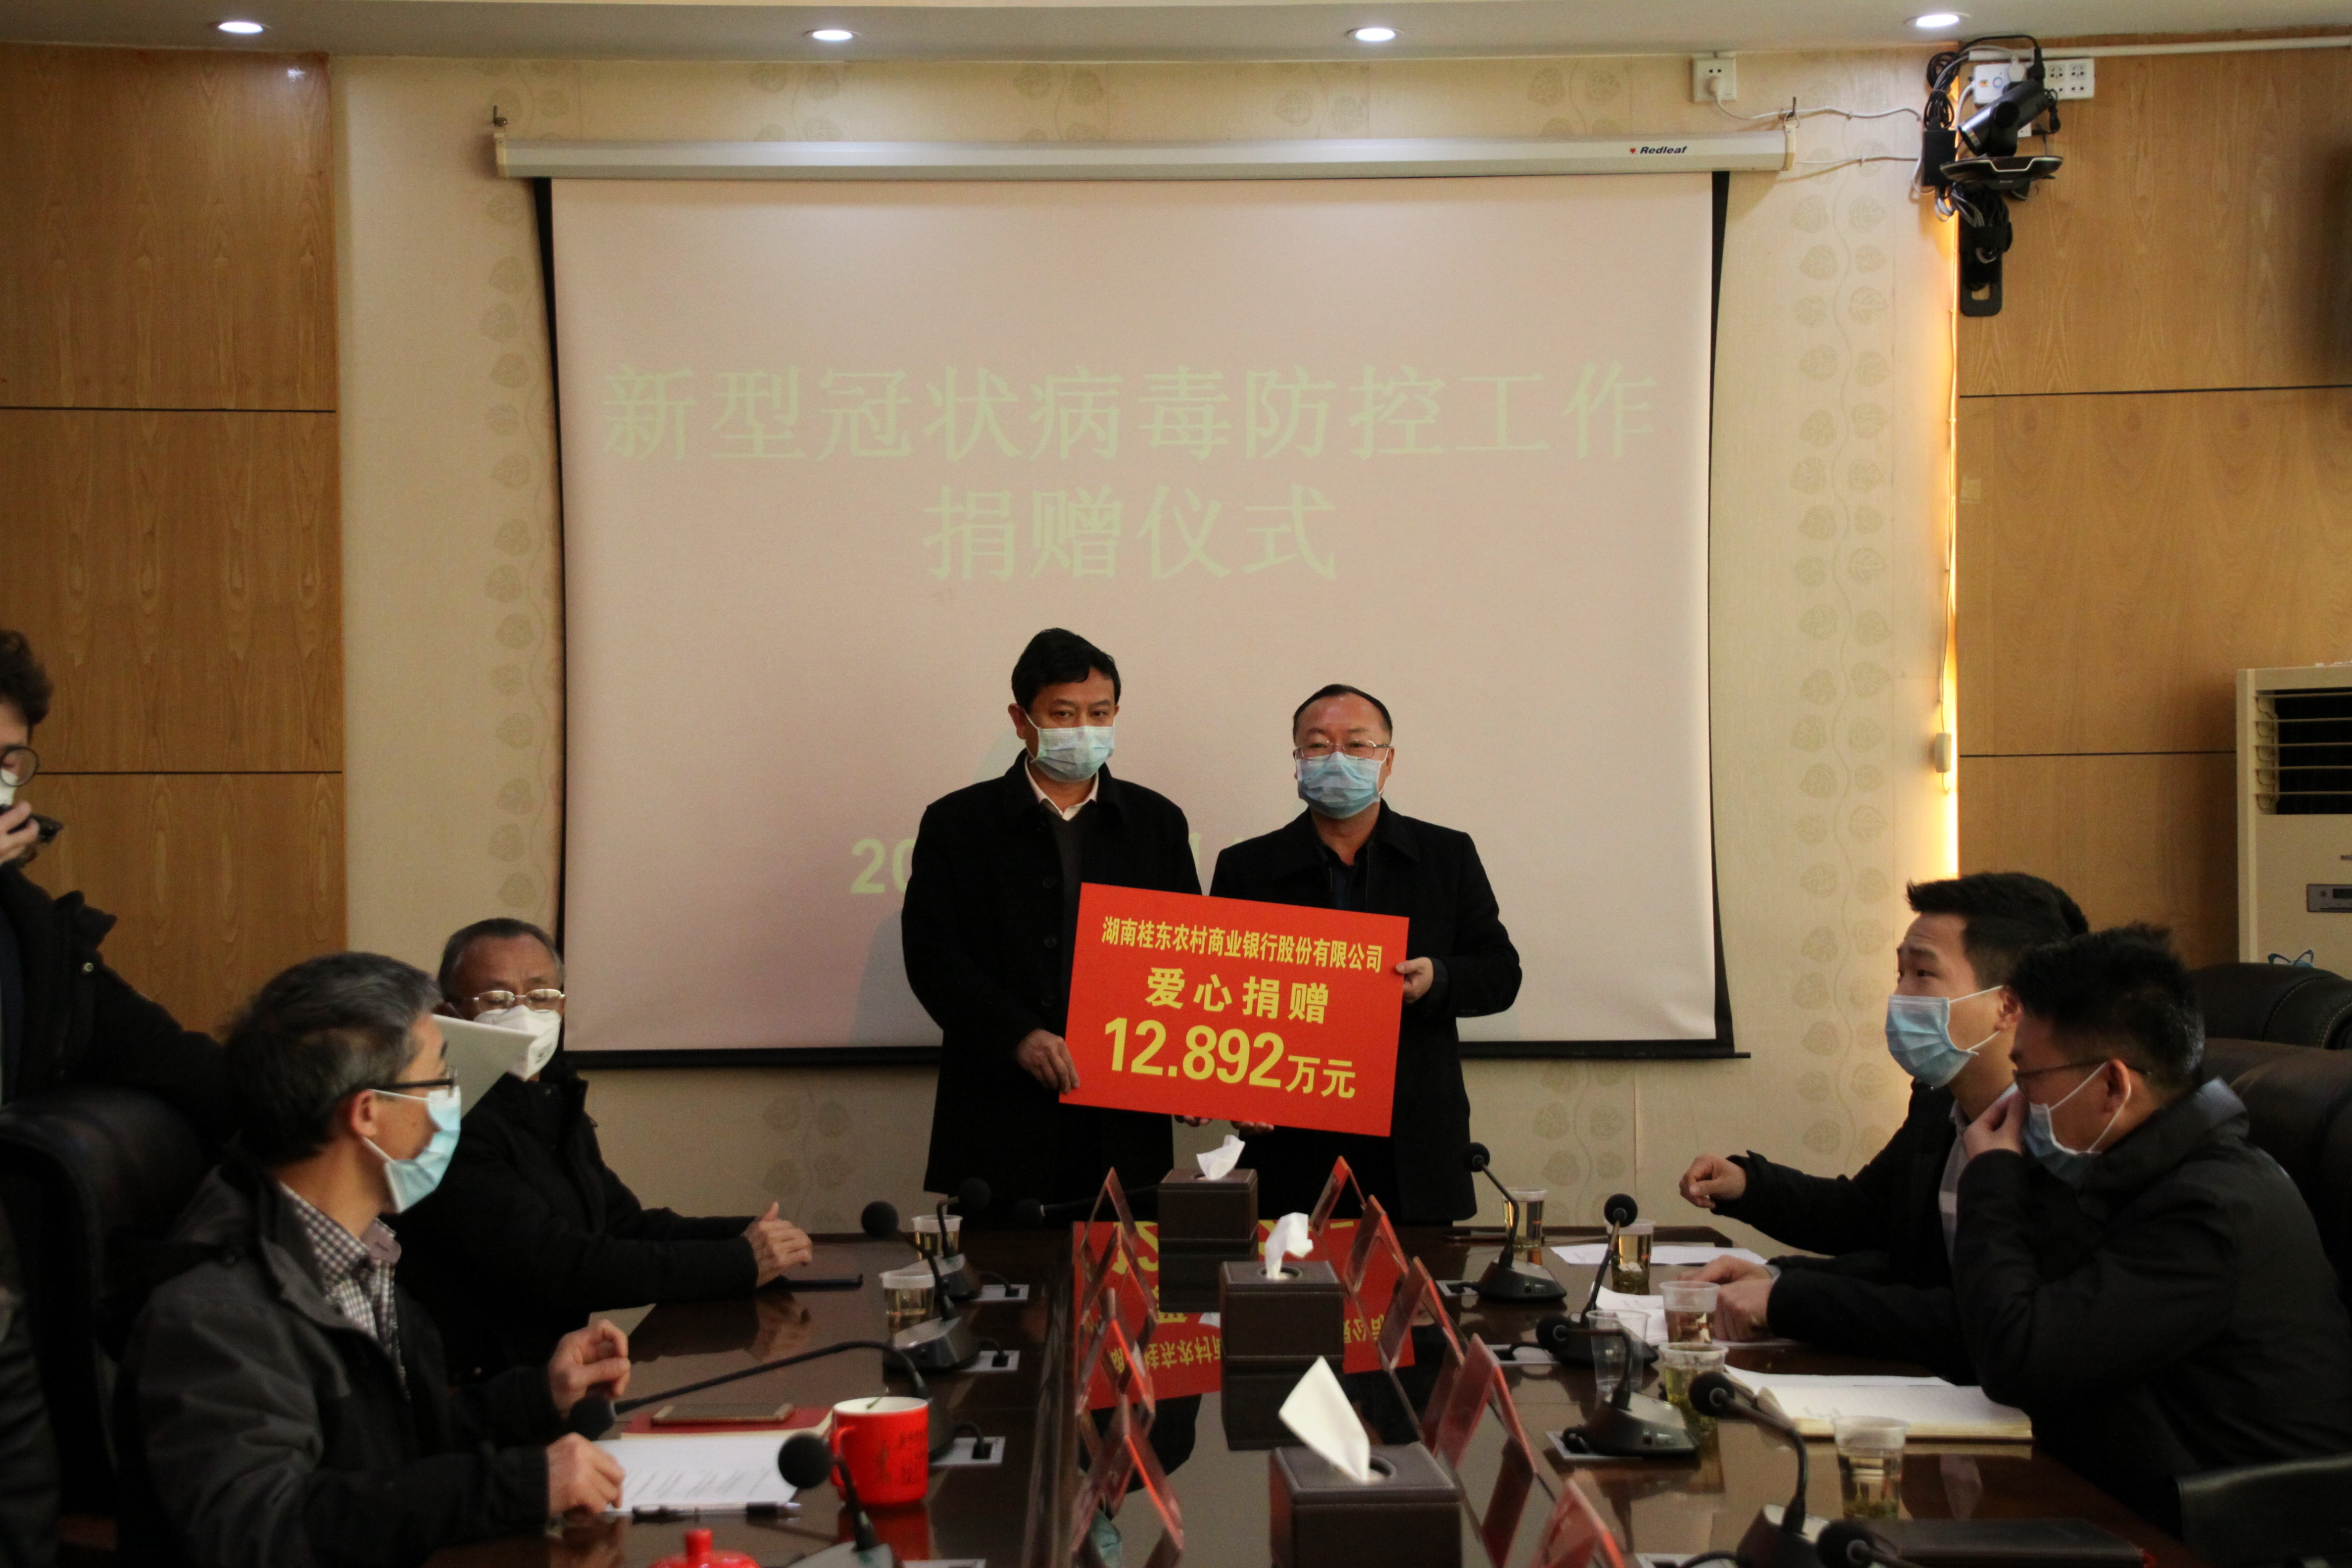 桂东农商银行捐款12.89万元助力地方抗疫